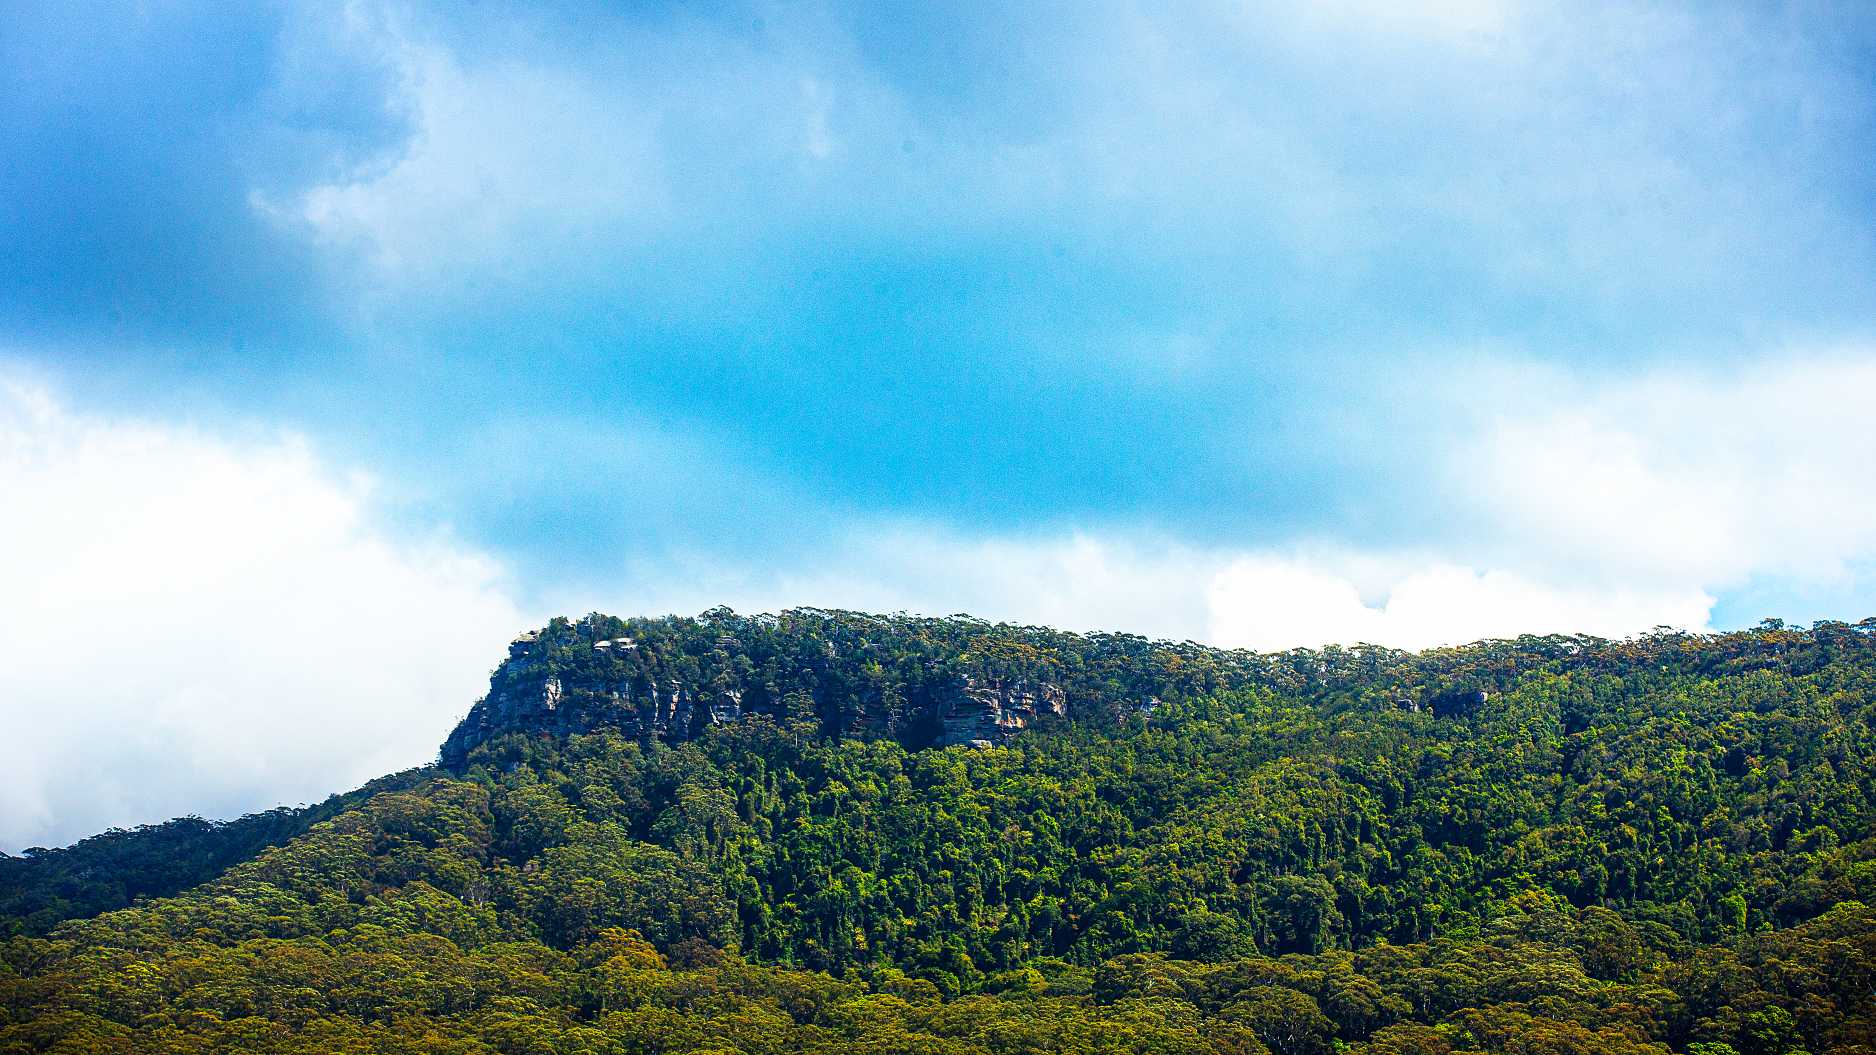 Illawarra escarpment